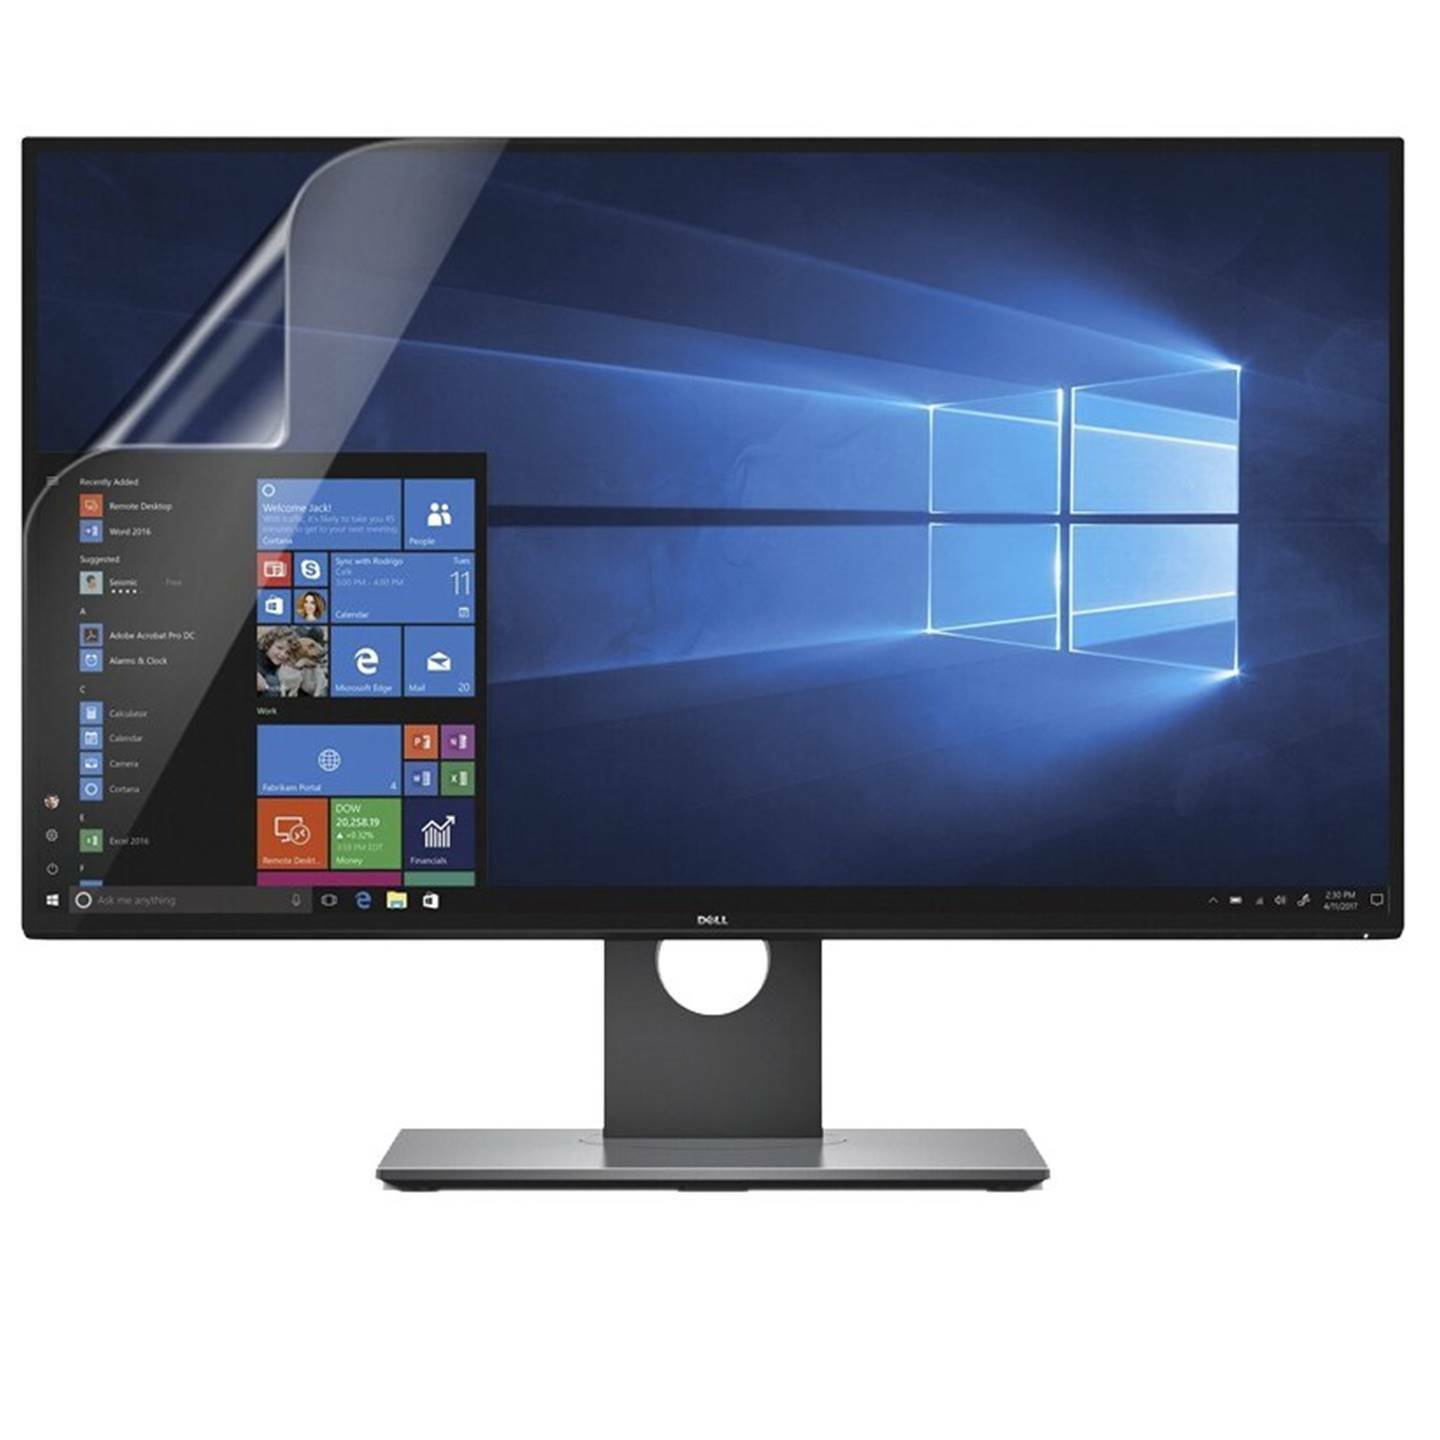 Anti Glare Matte Screen Protector Guard For Desktop PC Computer Monitor (16:9)